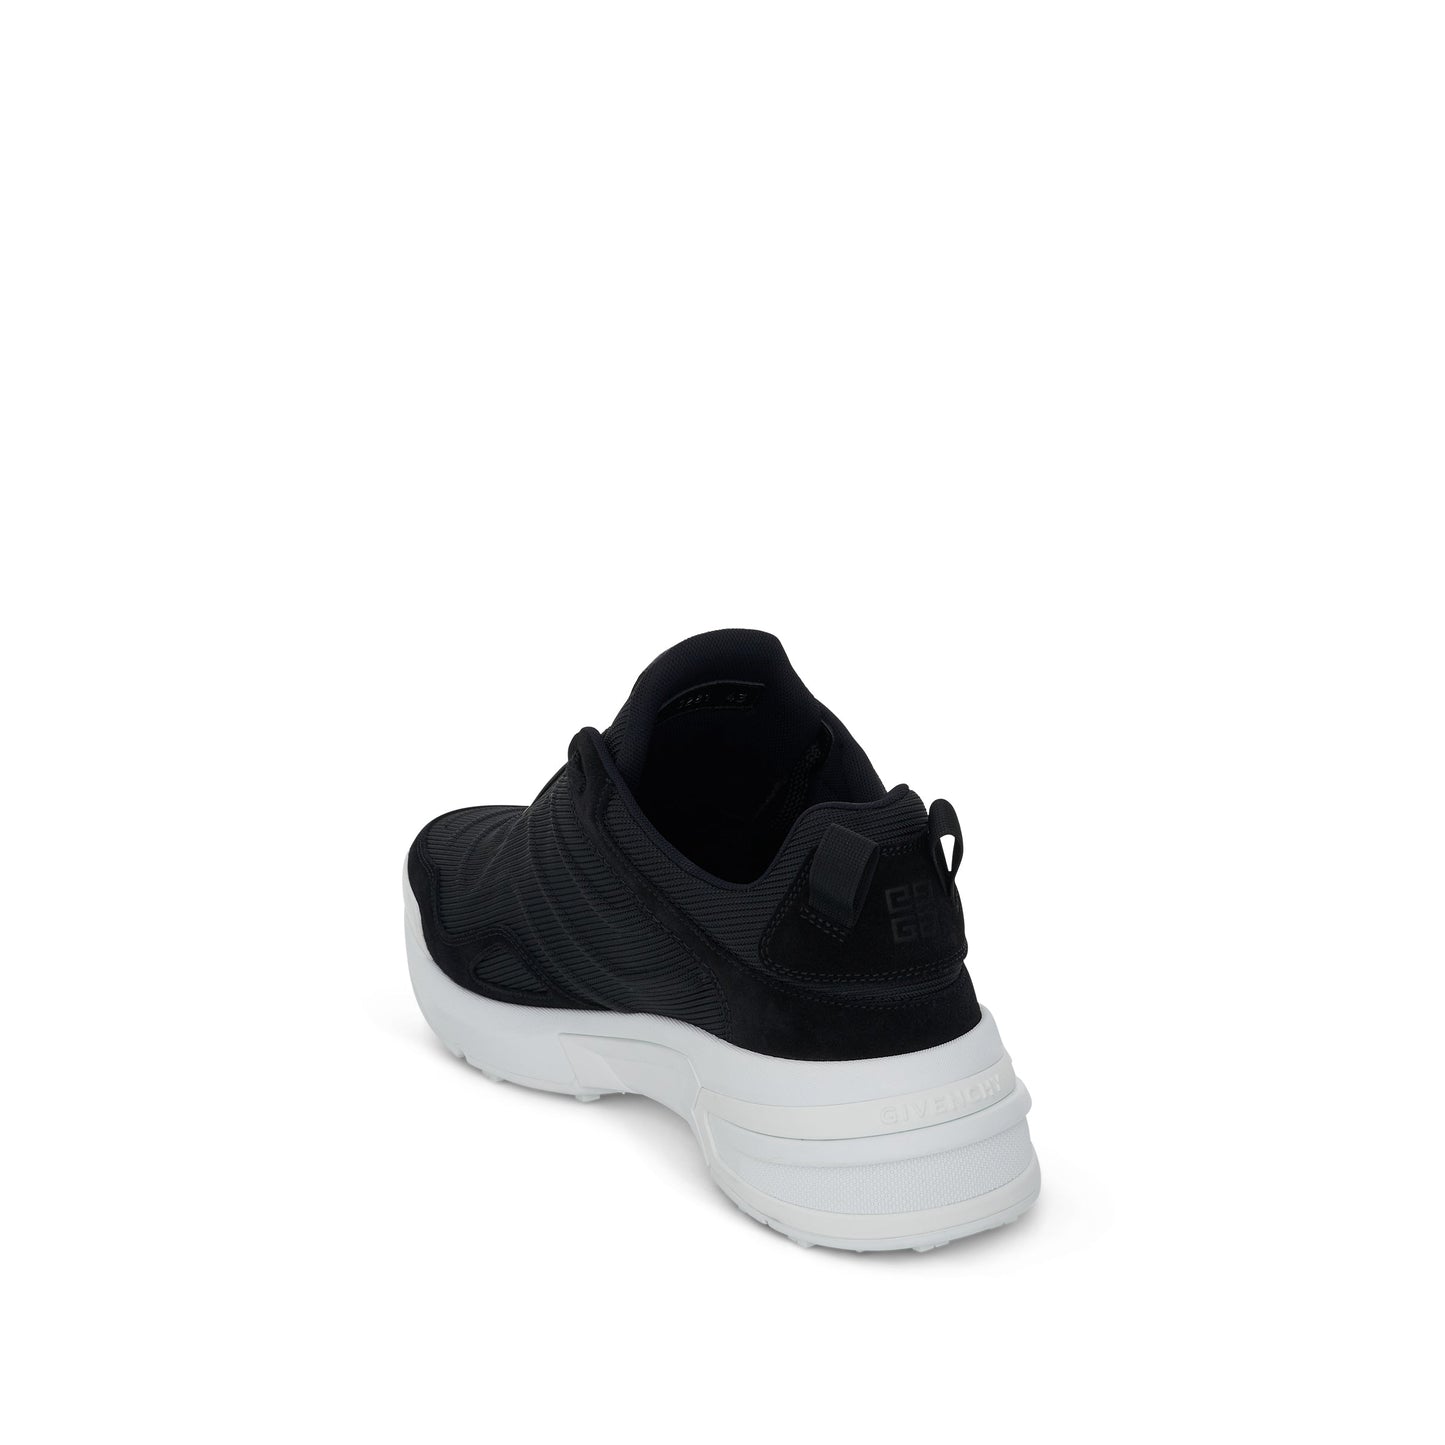 GIV 1 Light Runner Sneaker in Black/White